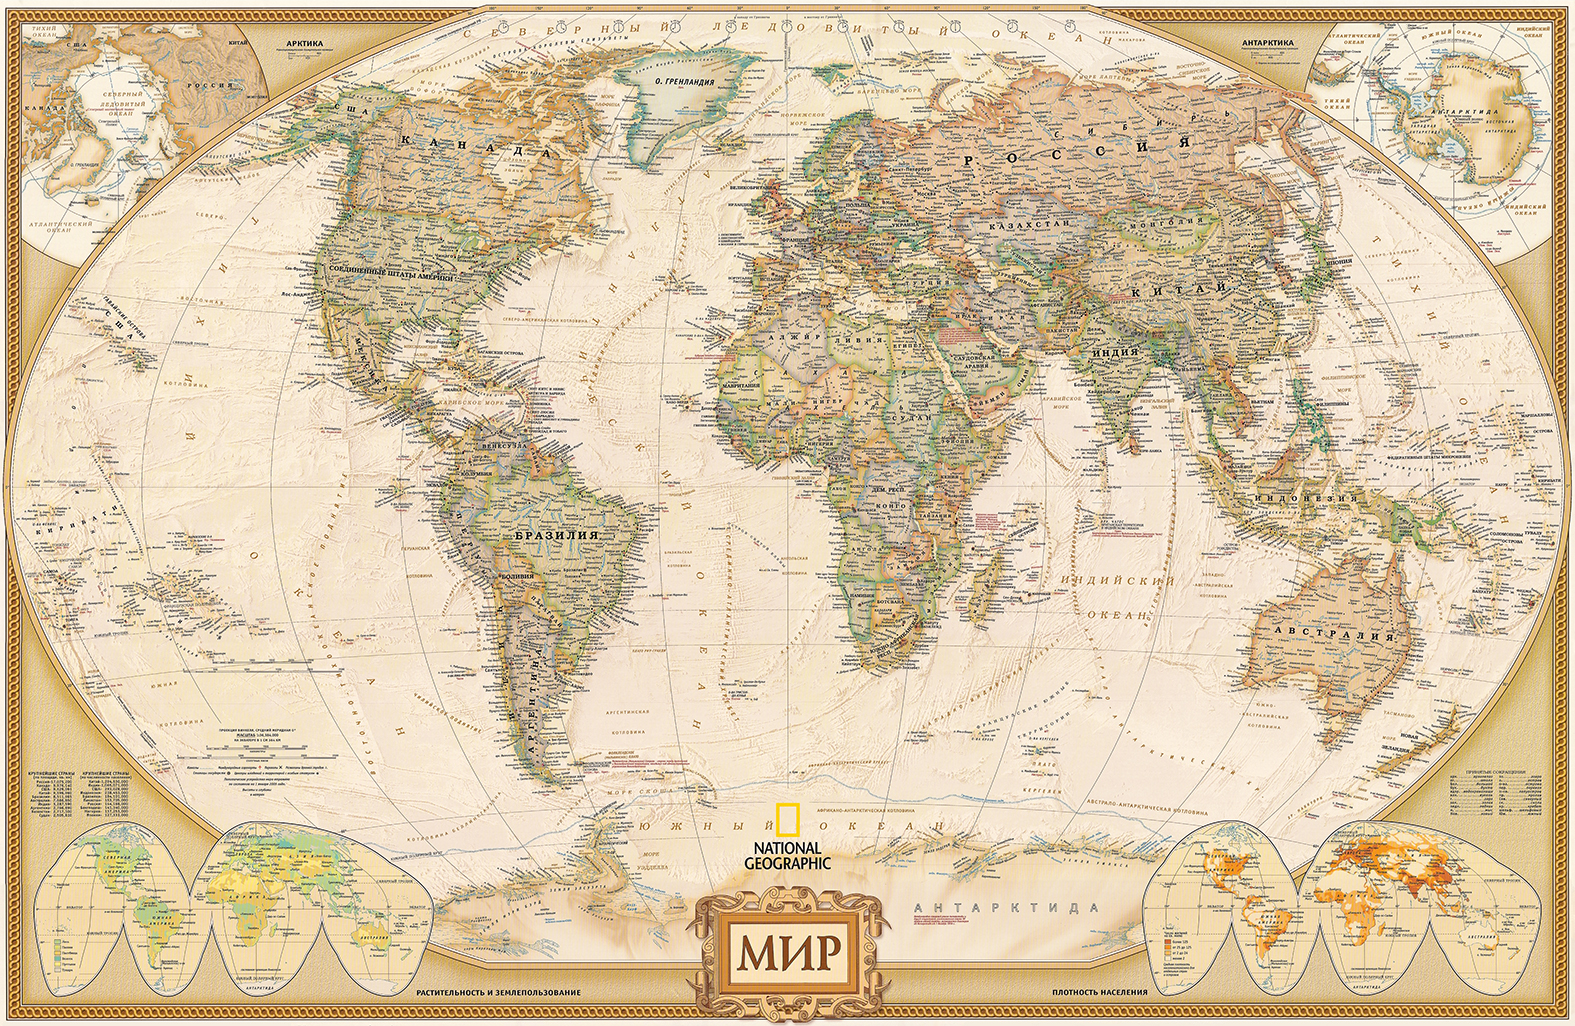 Фотообои Photostena Карта мира 3 x 2 м подарочная карта аквафор 2000р